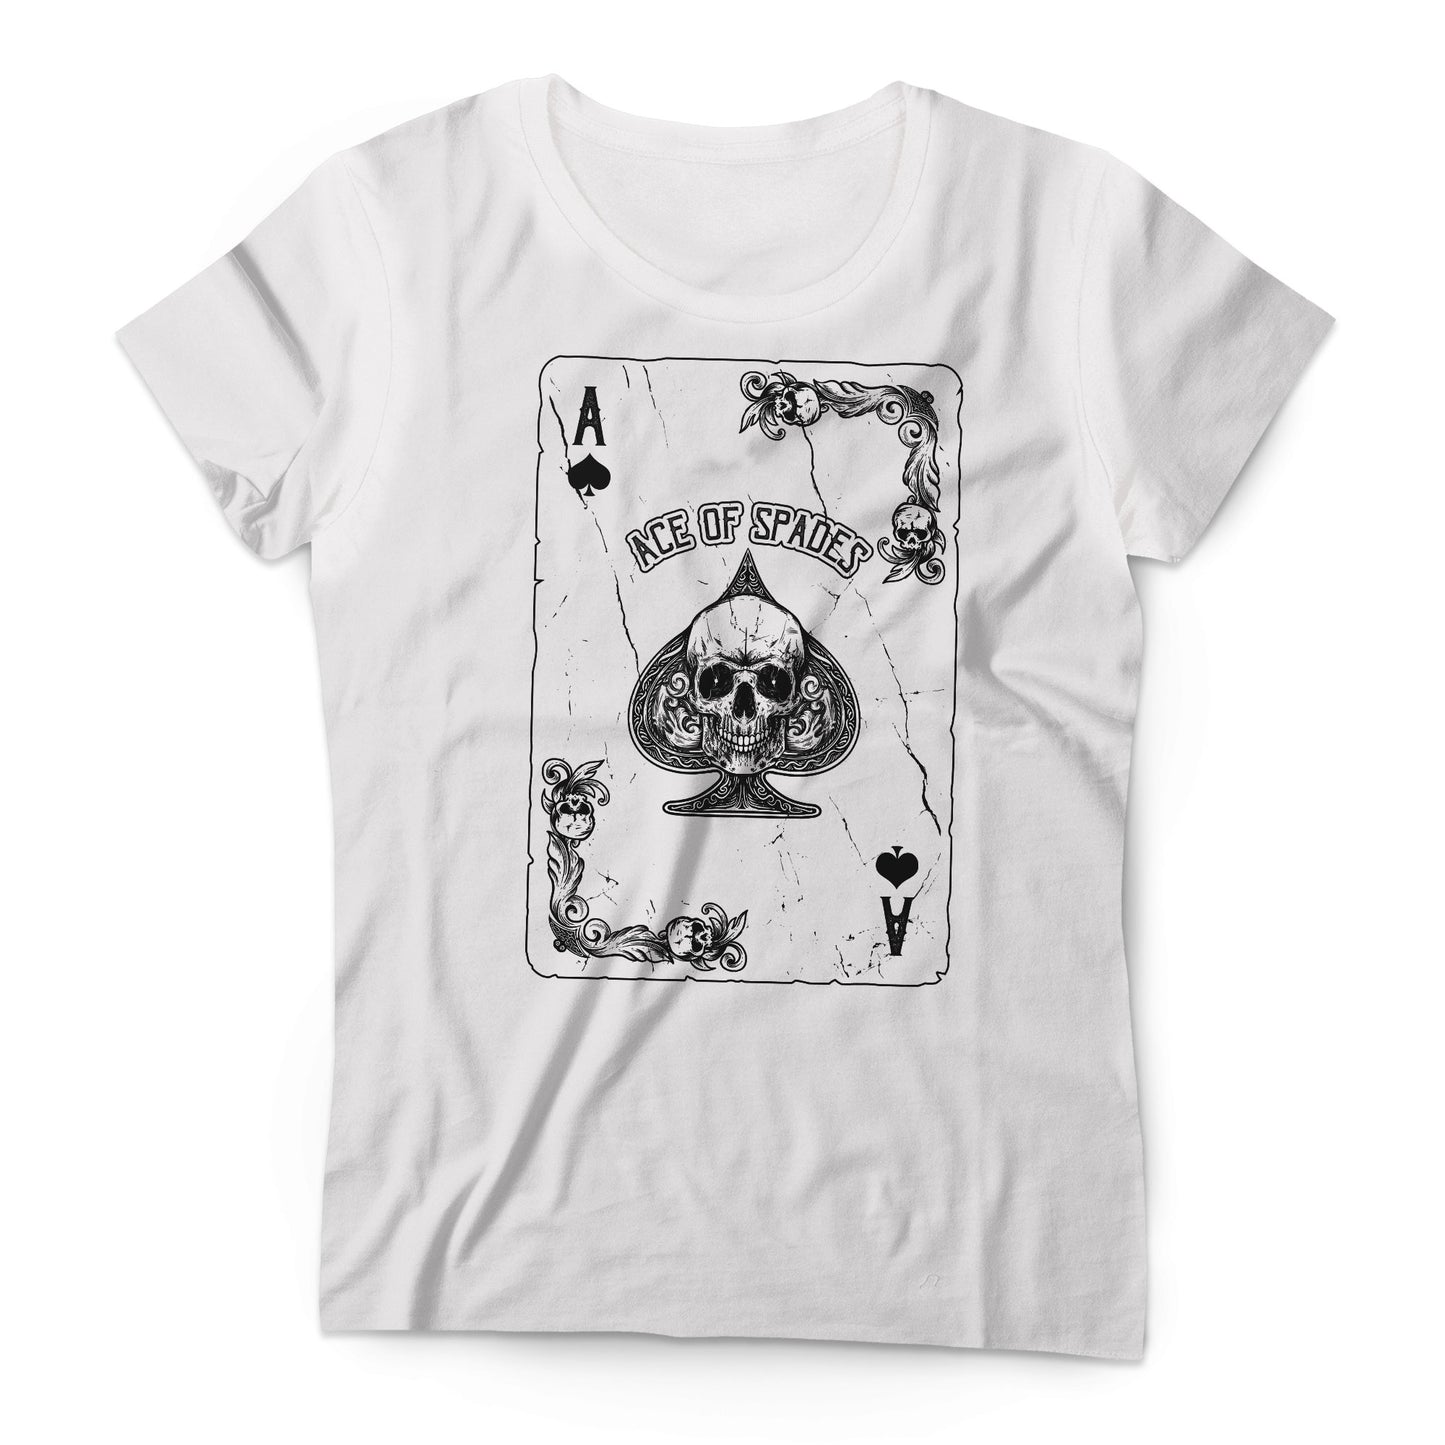 Motörhead - Ace of Spades - Women's T-shirt White 2